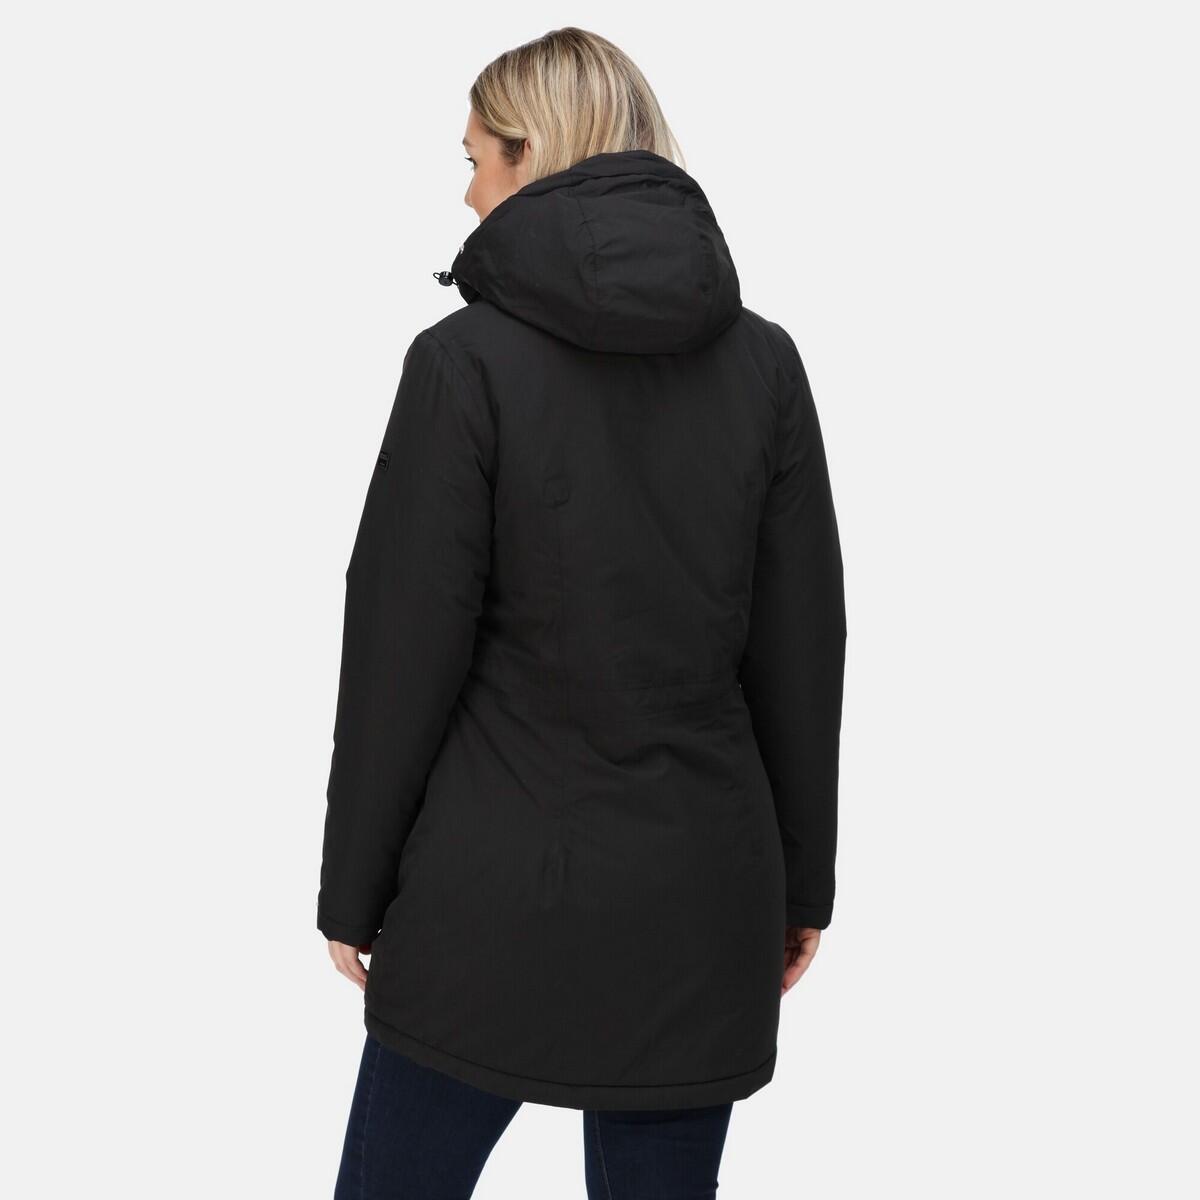 Womens/Ladies Voltera Heated Waterproof Jacket (Black) 2/5